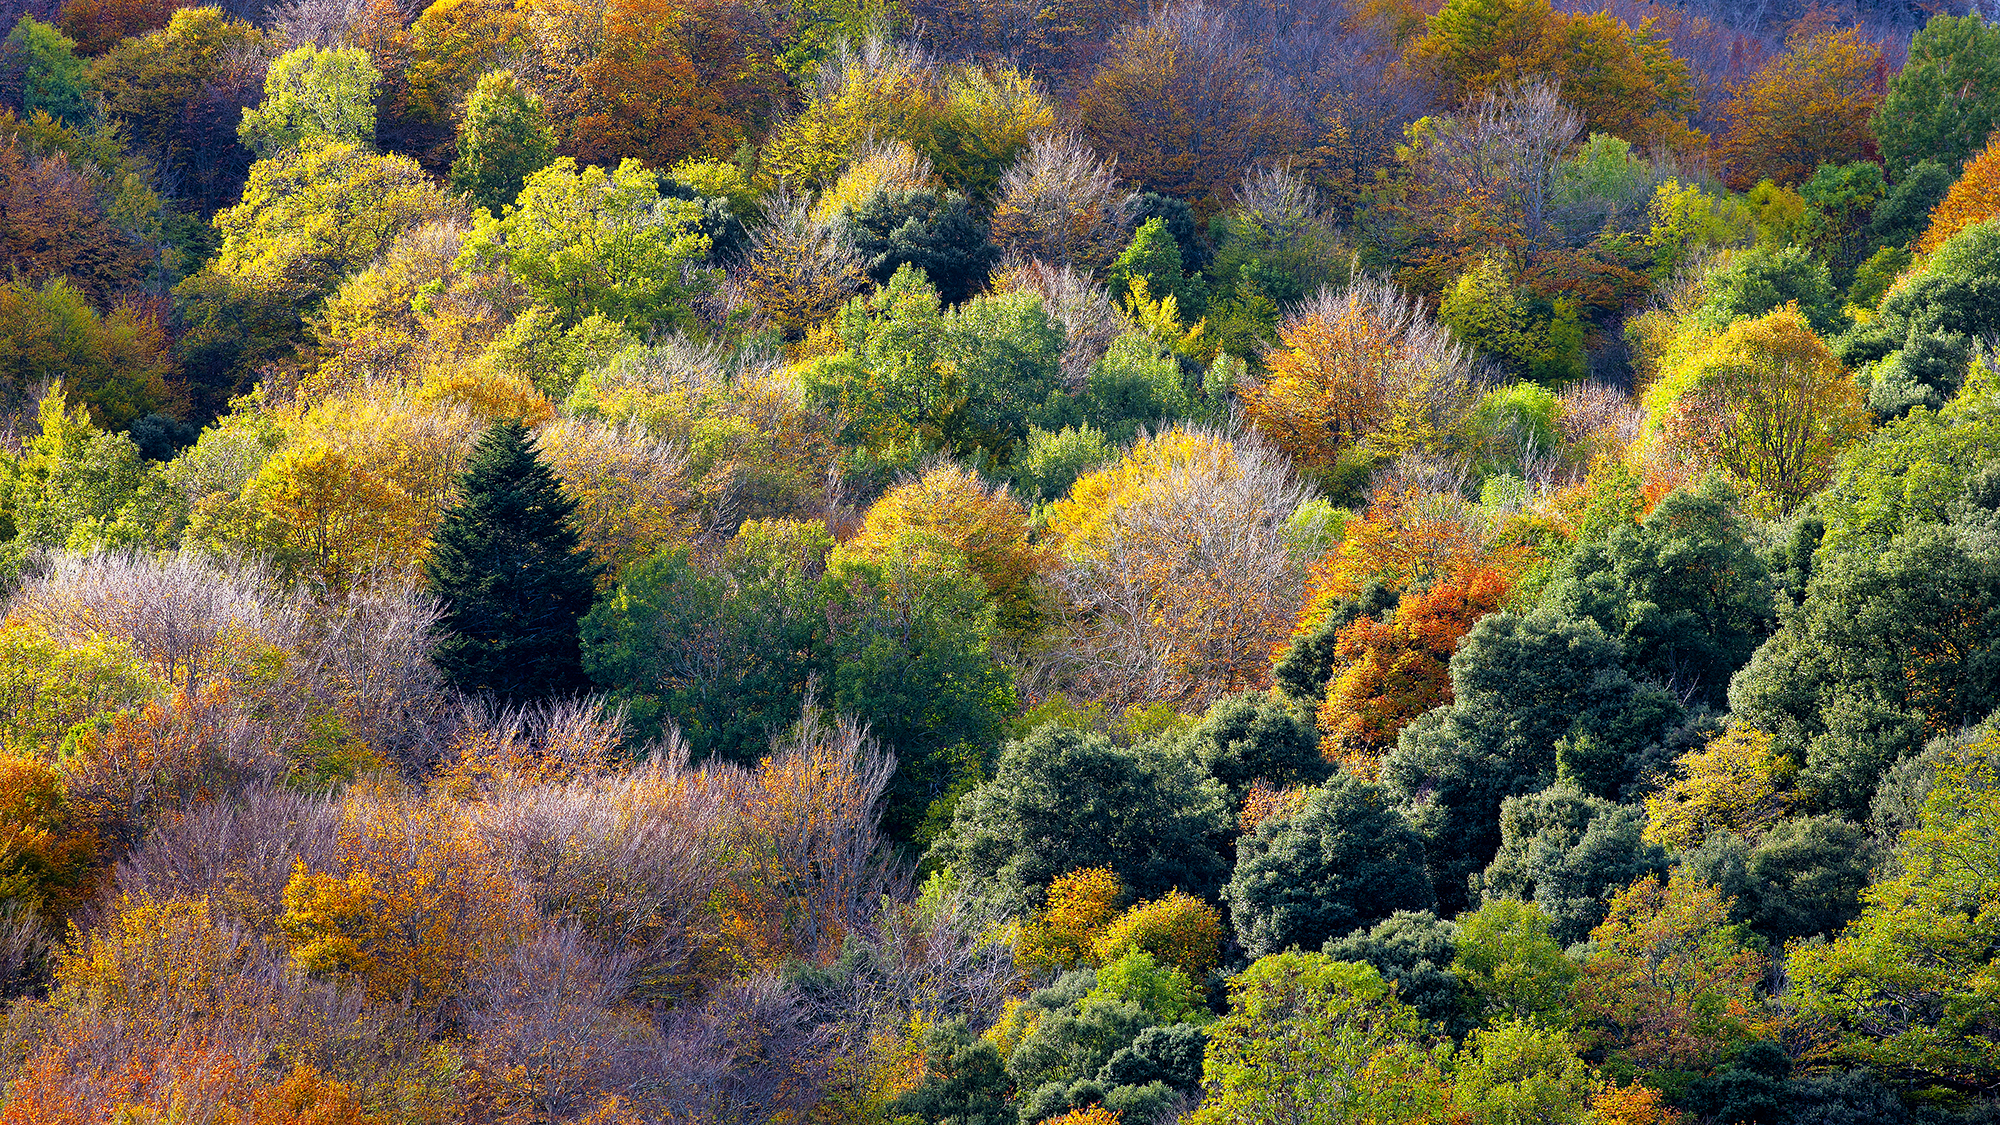 Paisajes, naturaleza, fotografía de paisajes, fotografía de naturaleza, Pirineos, árbol otoño, hojas otoño, bosque otoño, hojas colores